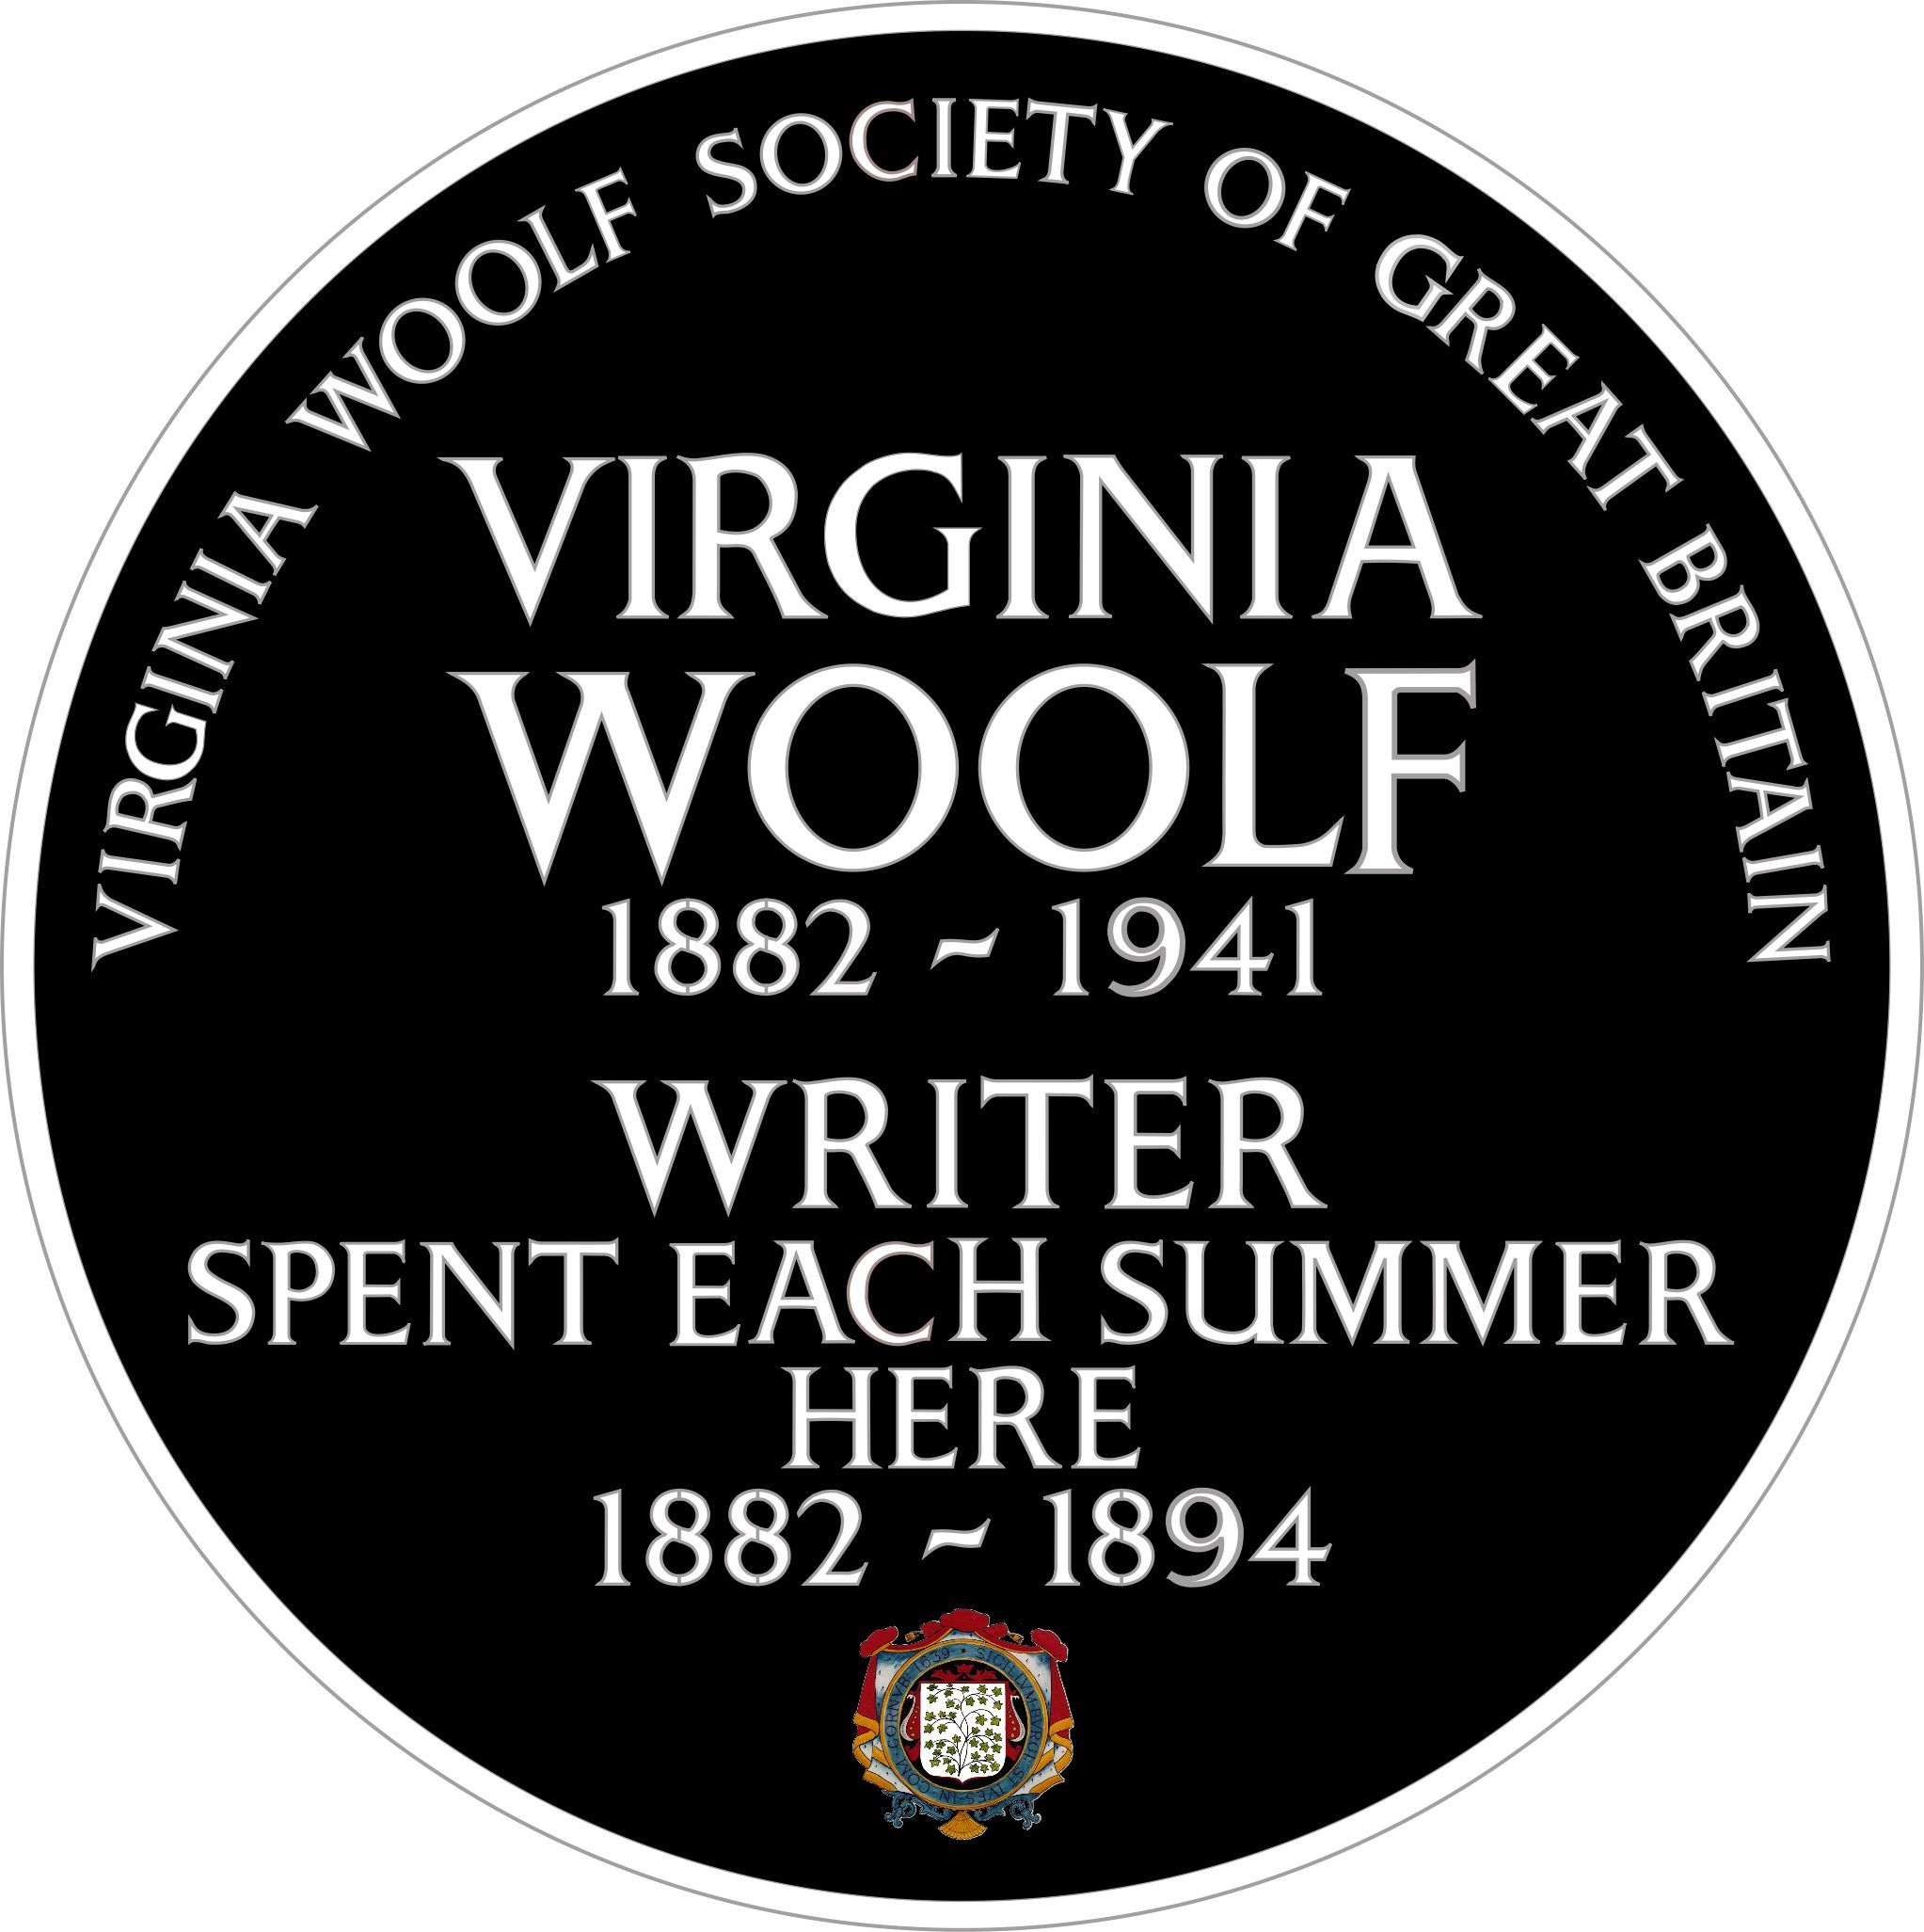 The Virginia Woolf plaque